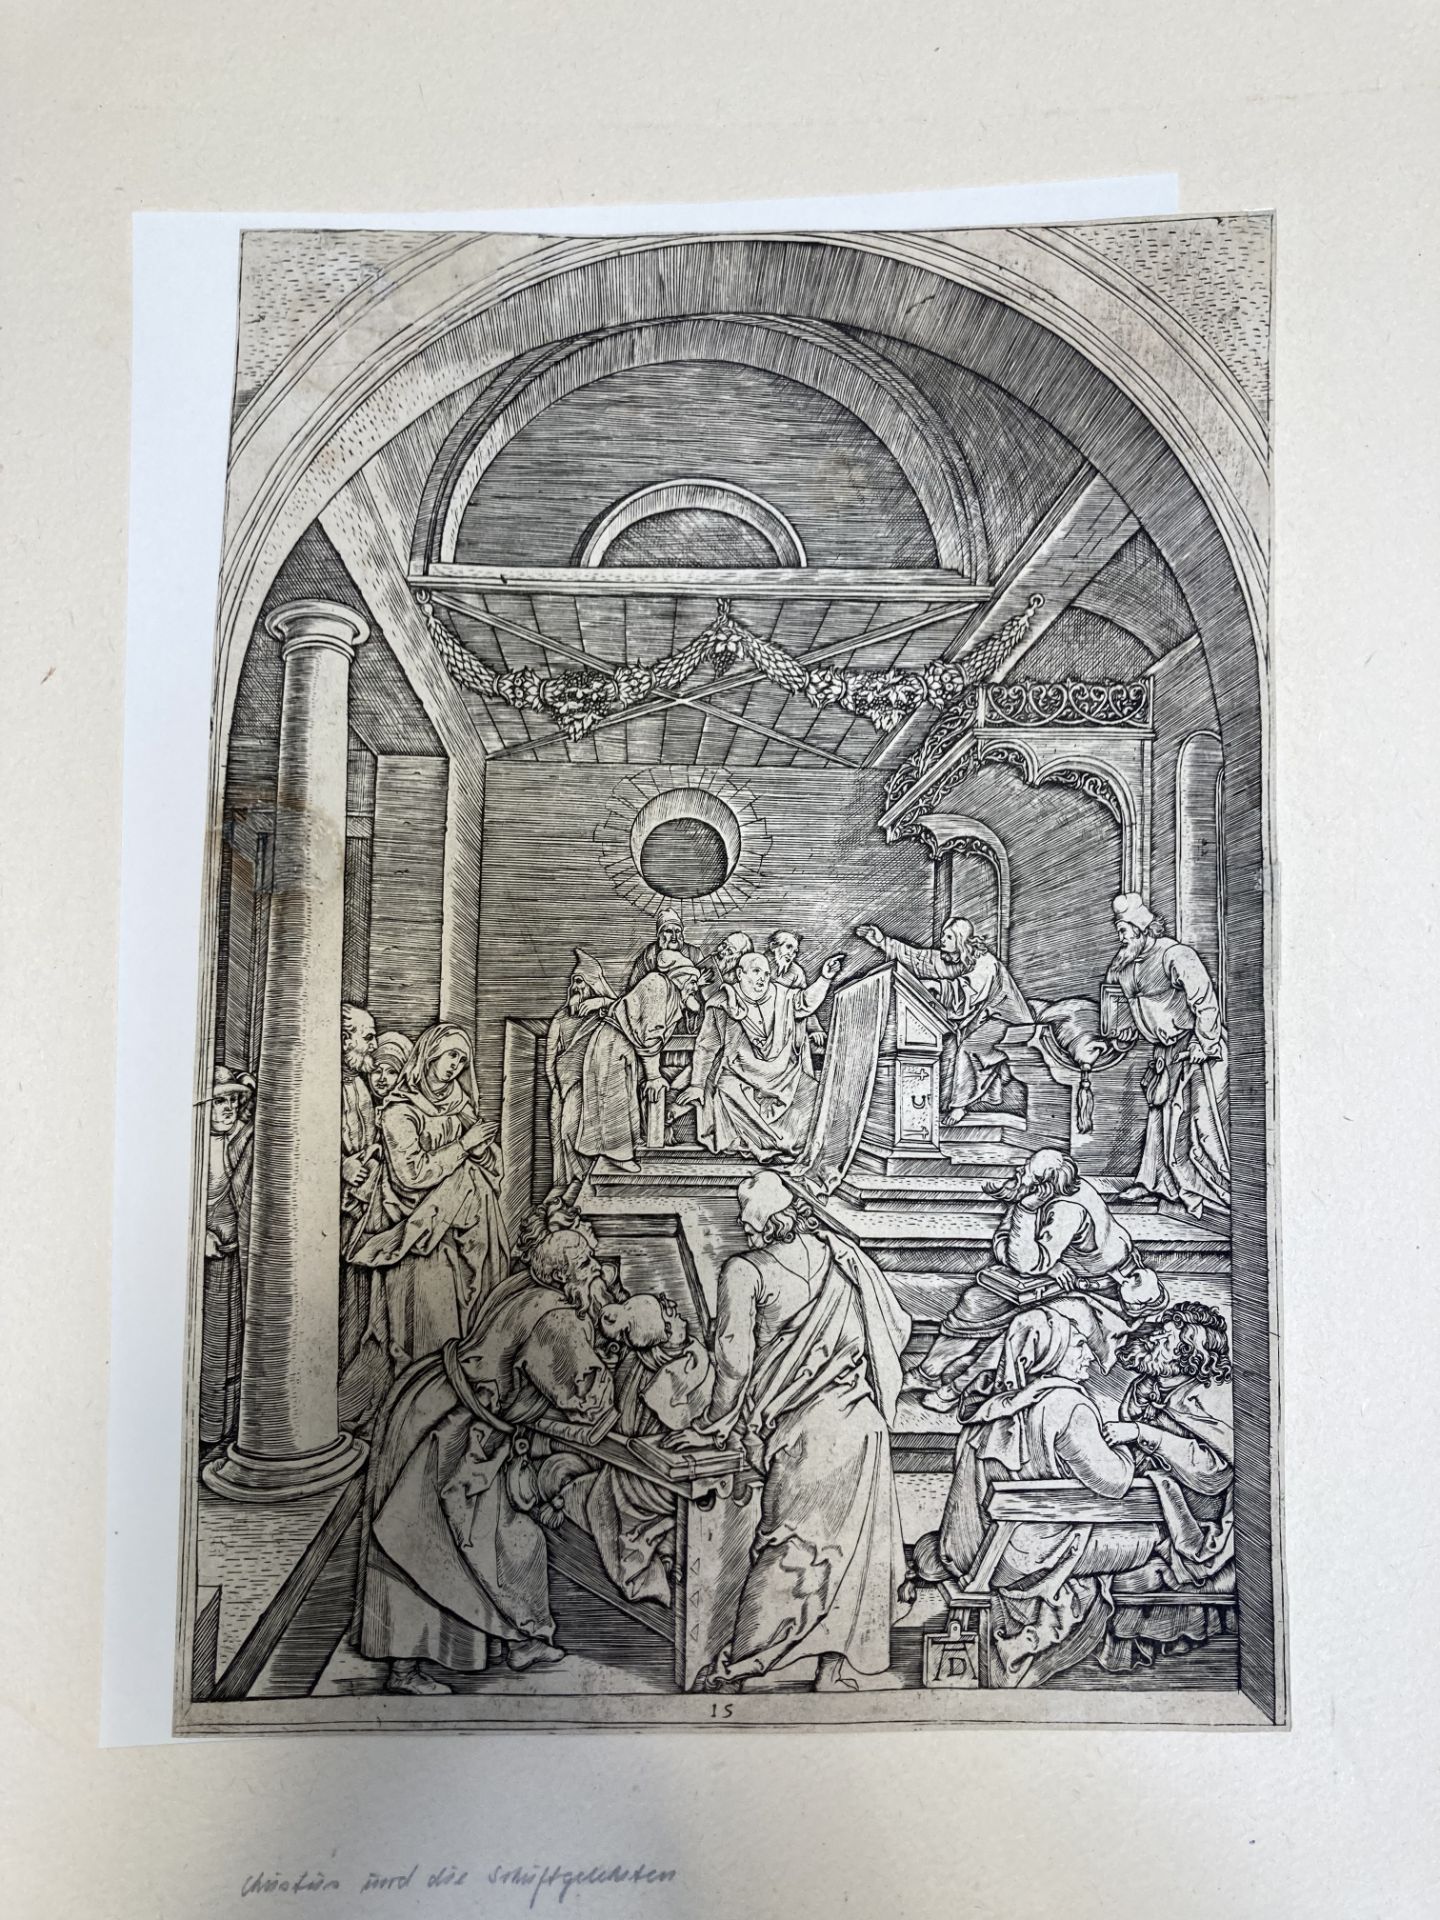 Marcantonio Raimondi ca. 1480 Molinella - 1534 Bologna: Life of the Virgin - Image 18 of 20